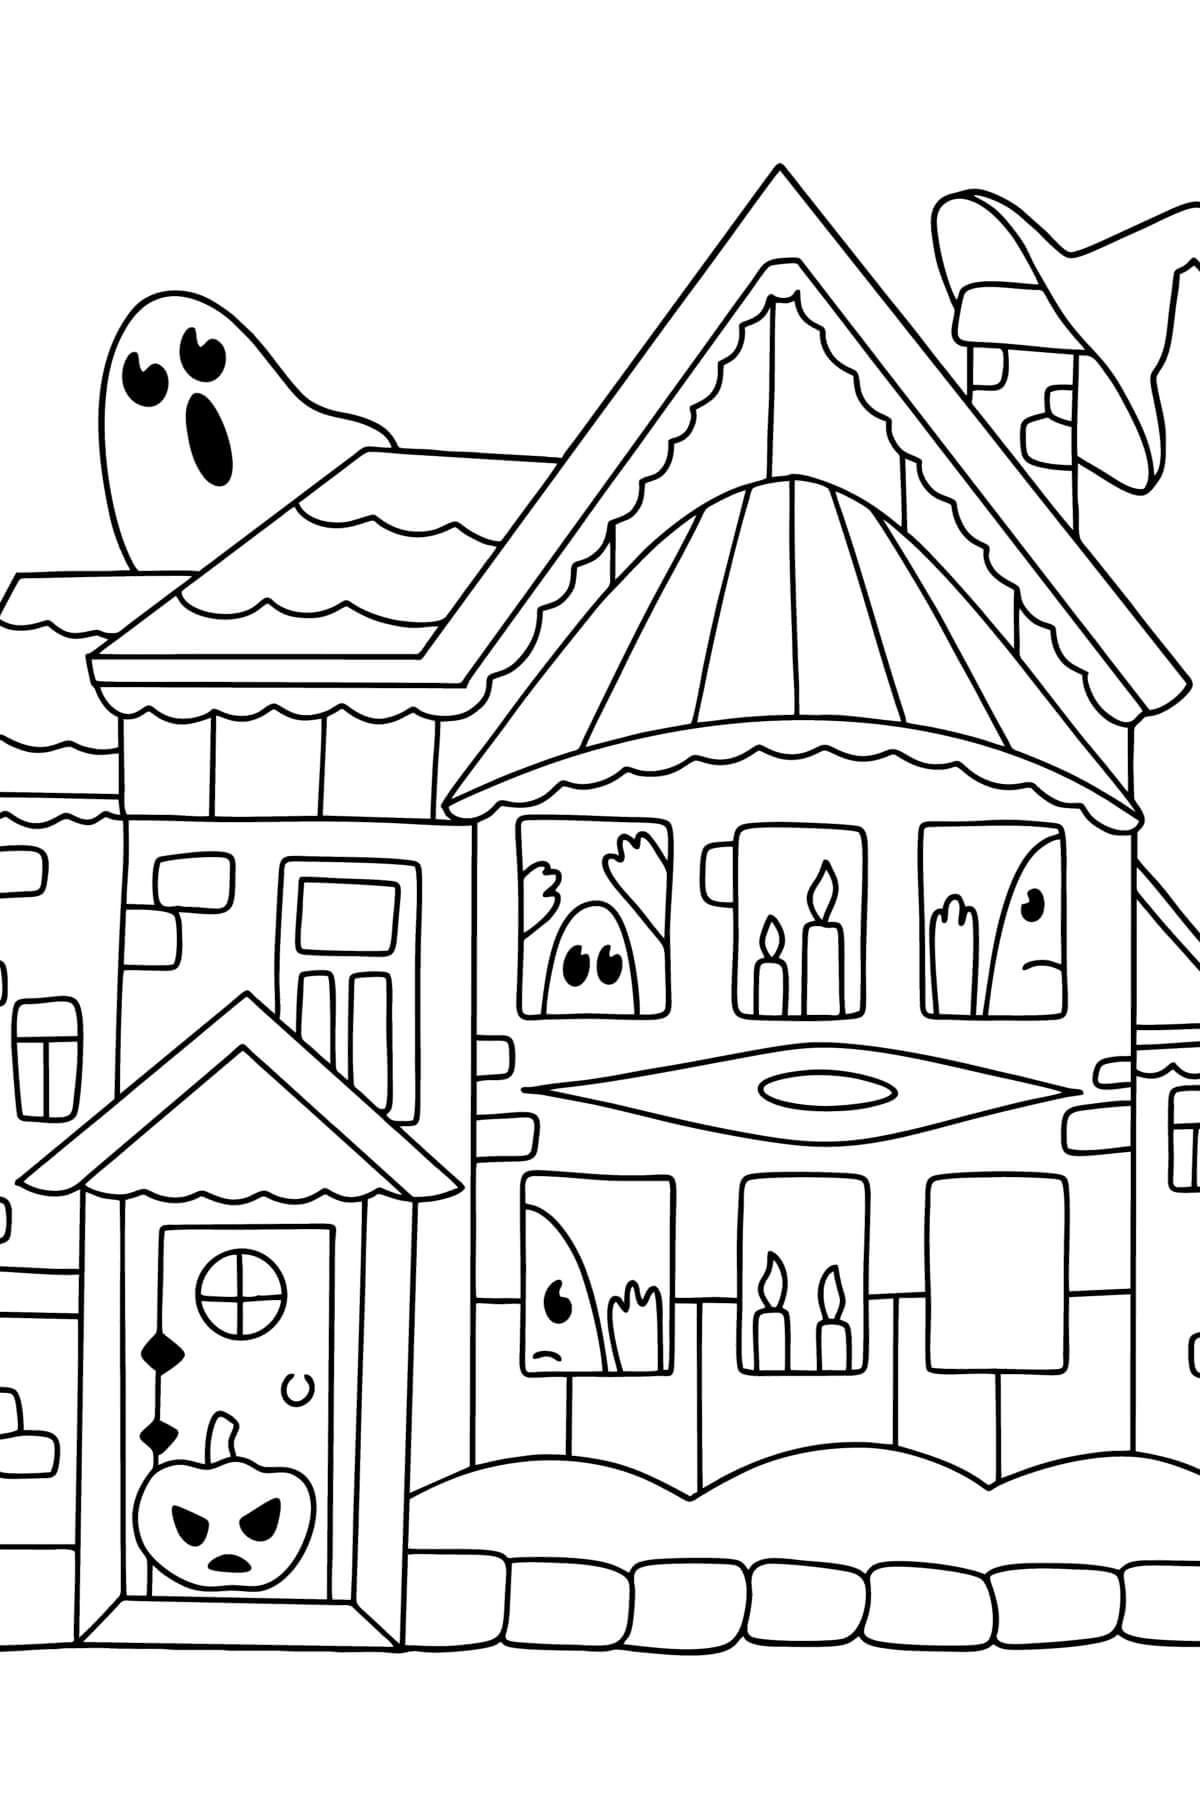 Maison Hantée d’Halloween coloring page